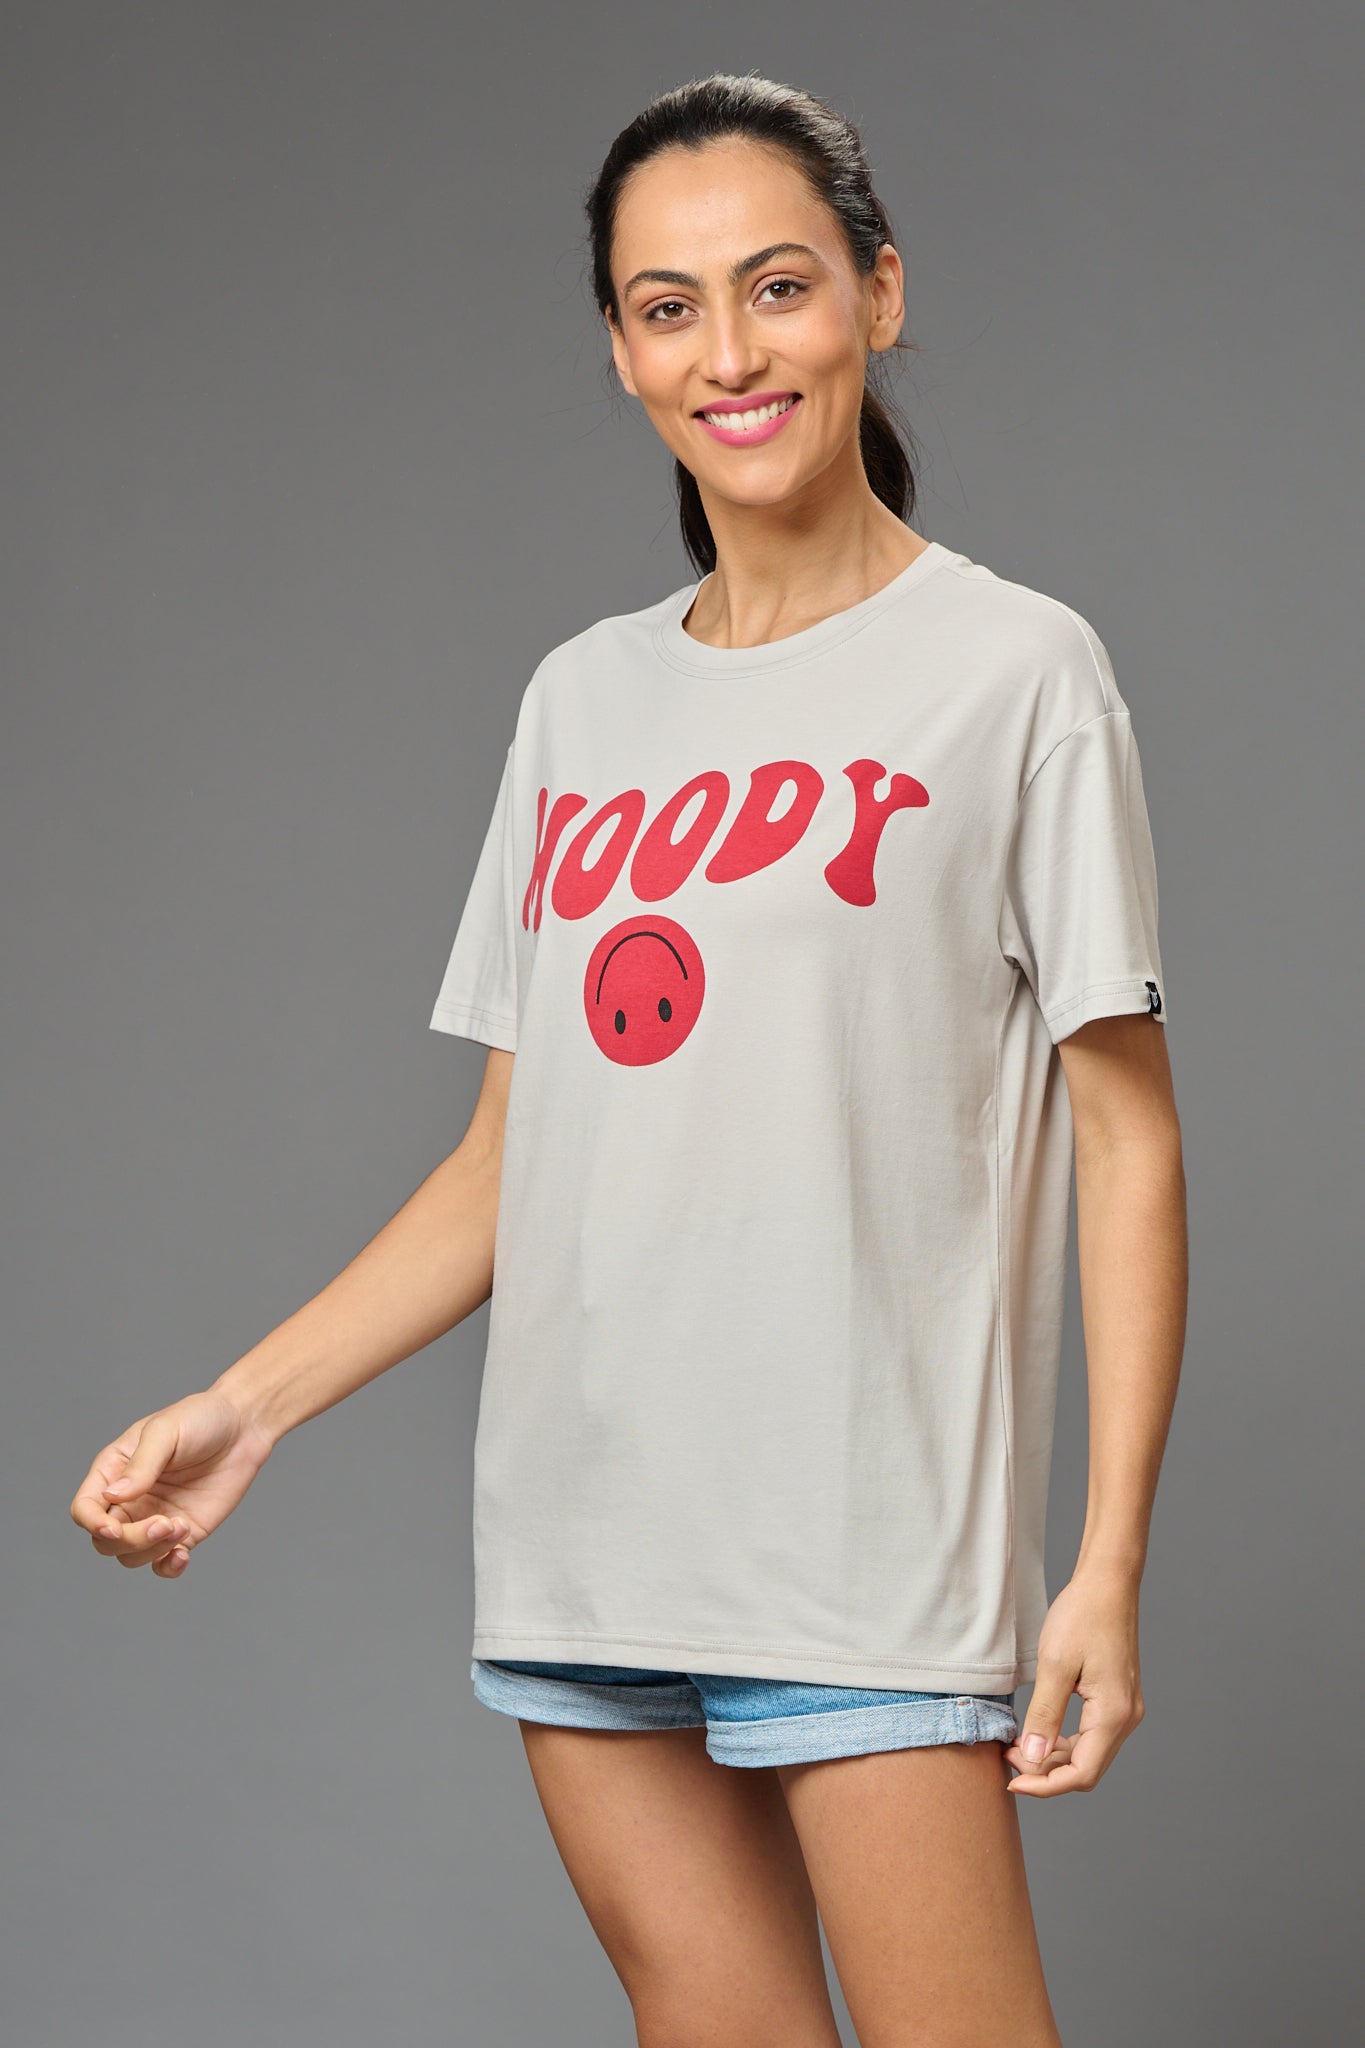 Moody Printed Oversized T-Shirt for Women - Go Devil